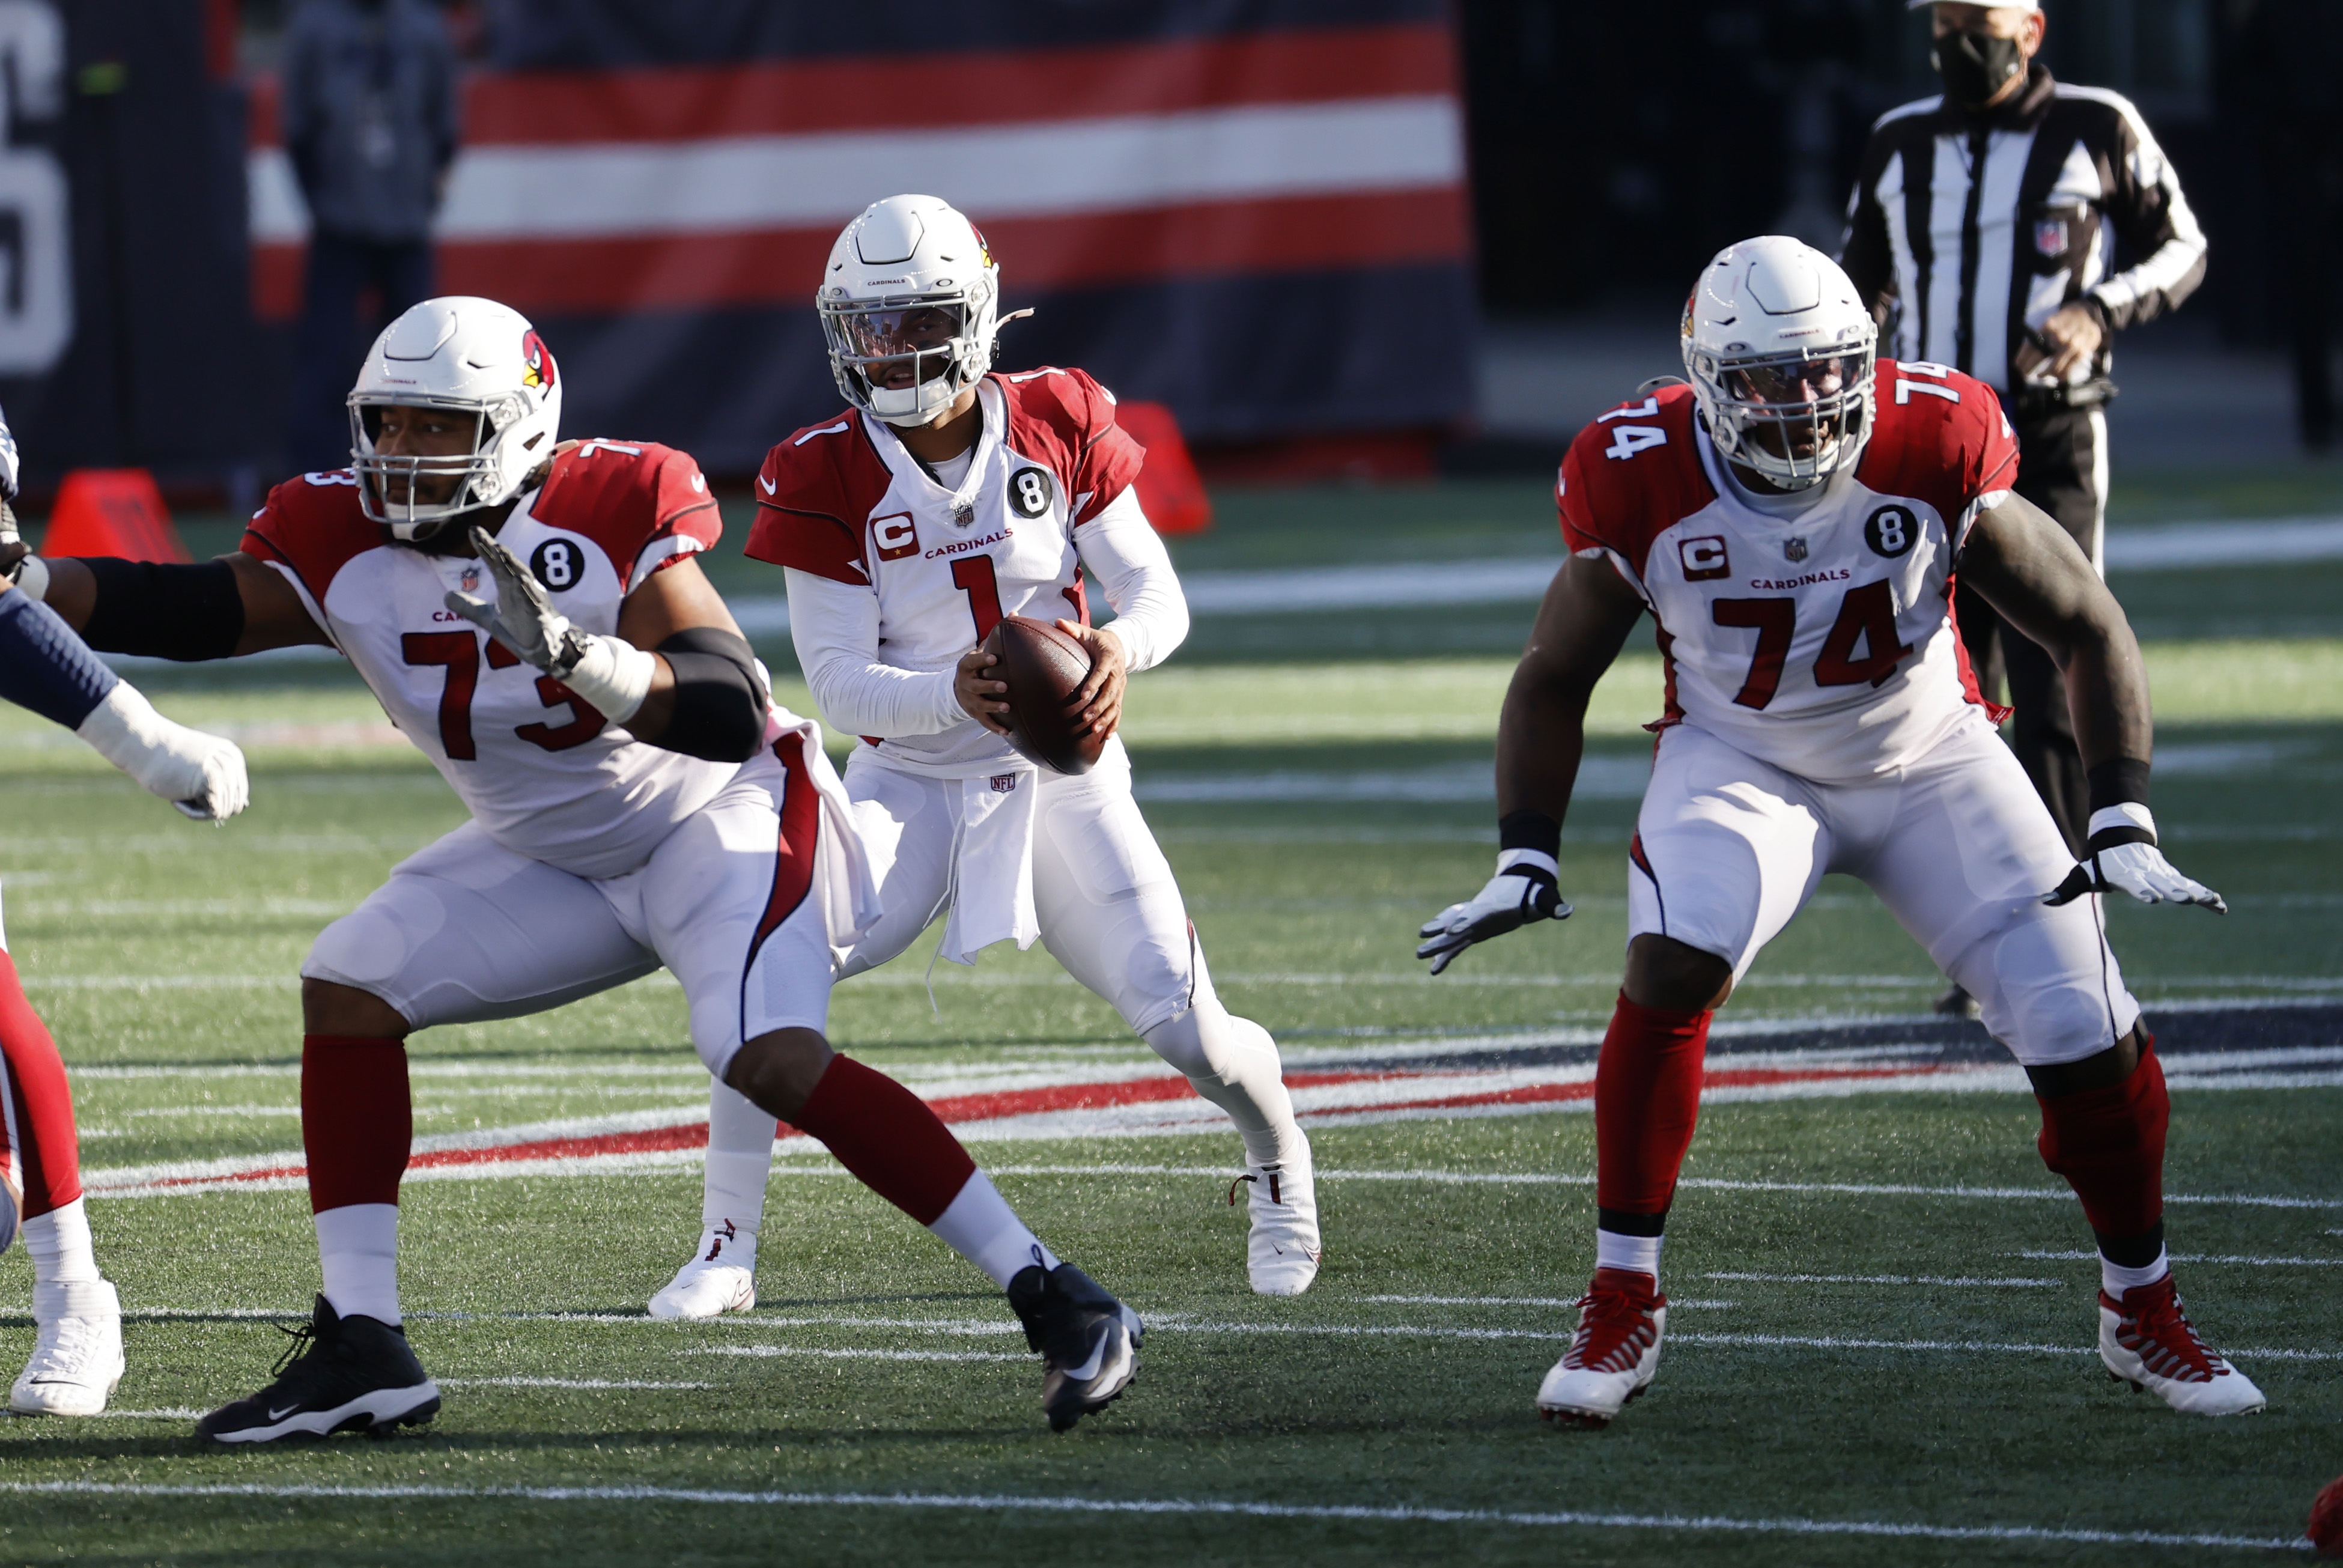 NFL: NOV 29 Cardinals at Patriots